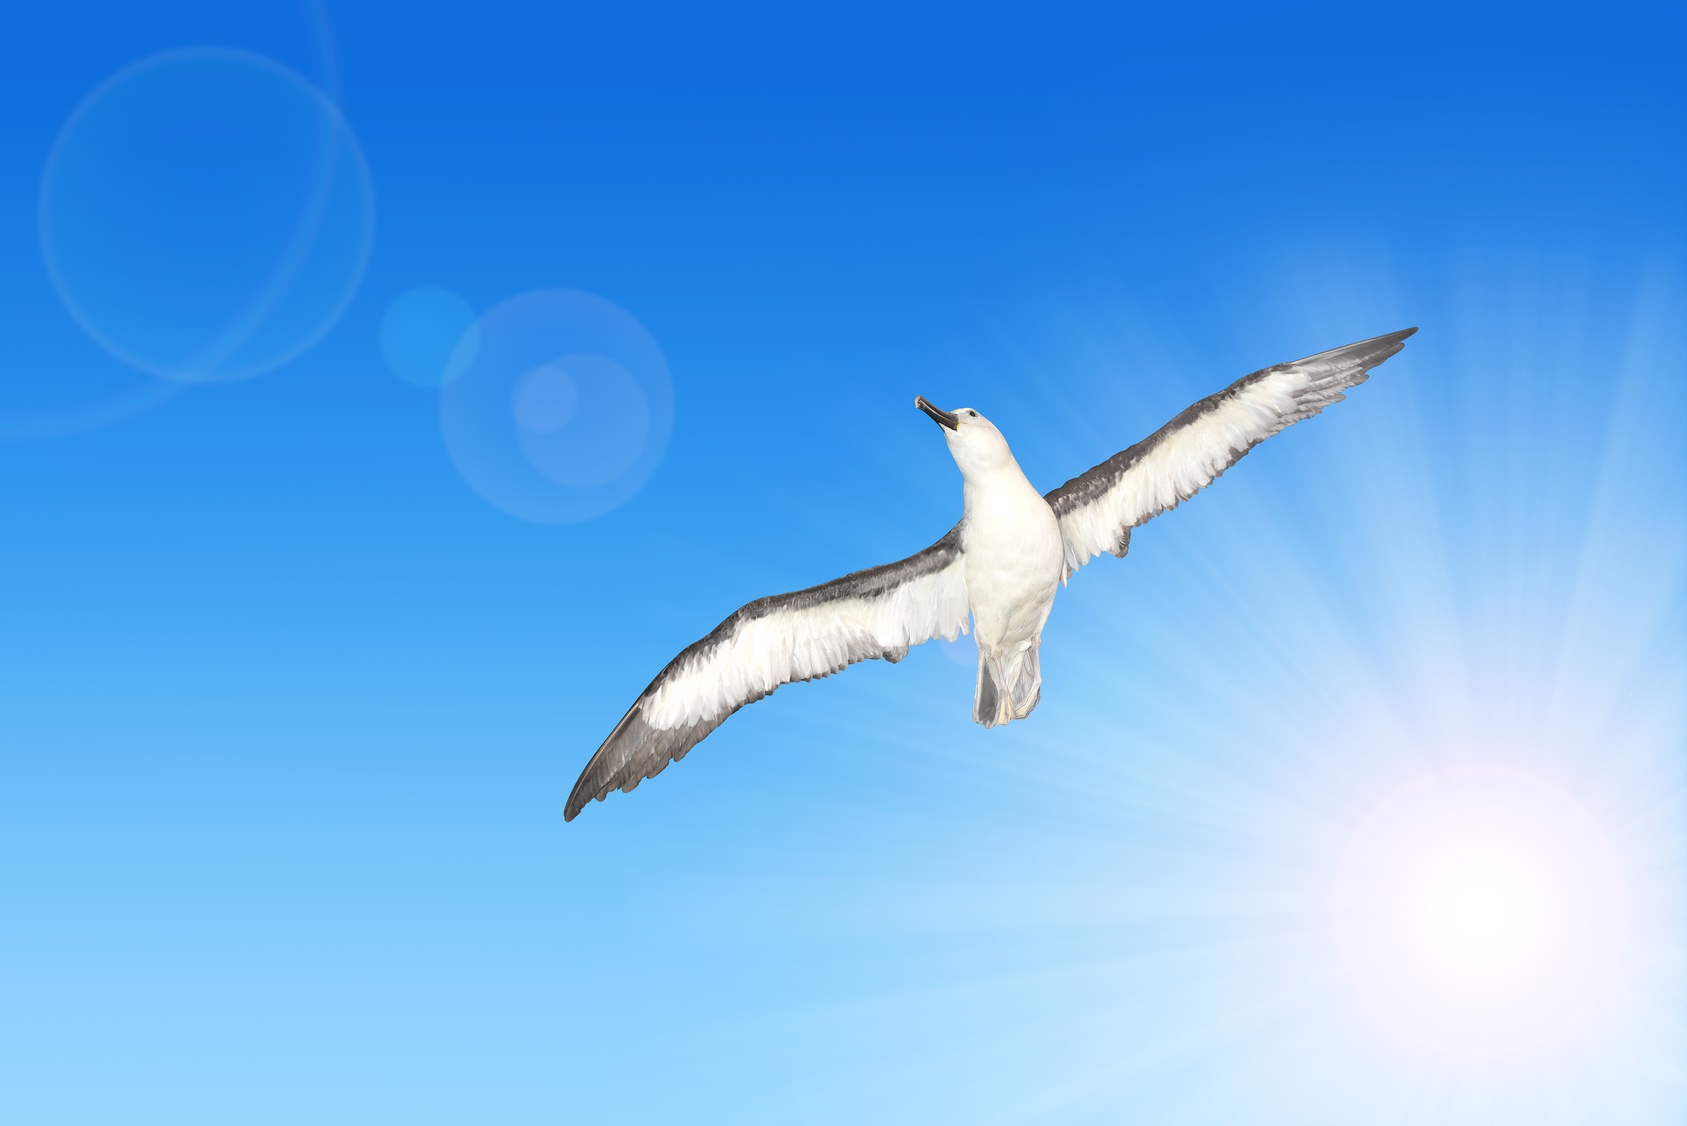 En plein vol, le grand albatros (Diomedea exulans) étend ses ailes qui peuvent atteindre une envergure de 3,70 m. © vencav, Fotolia